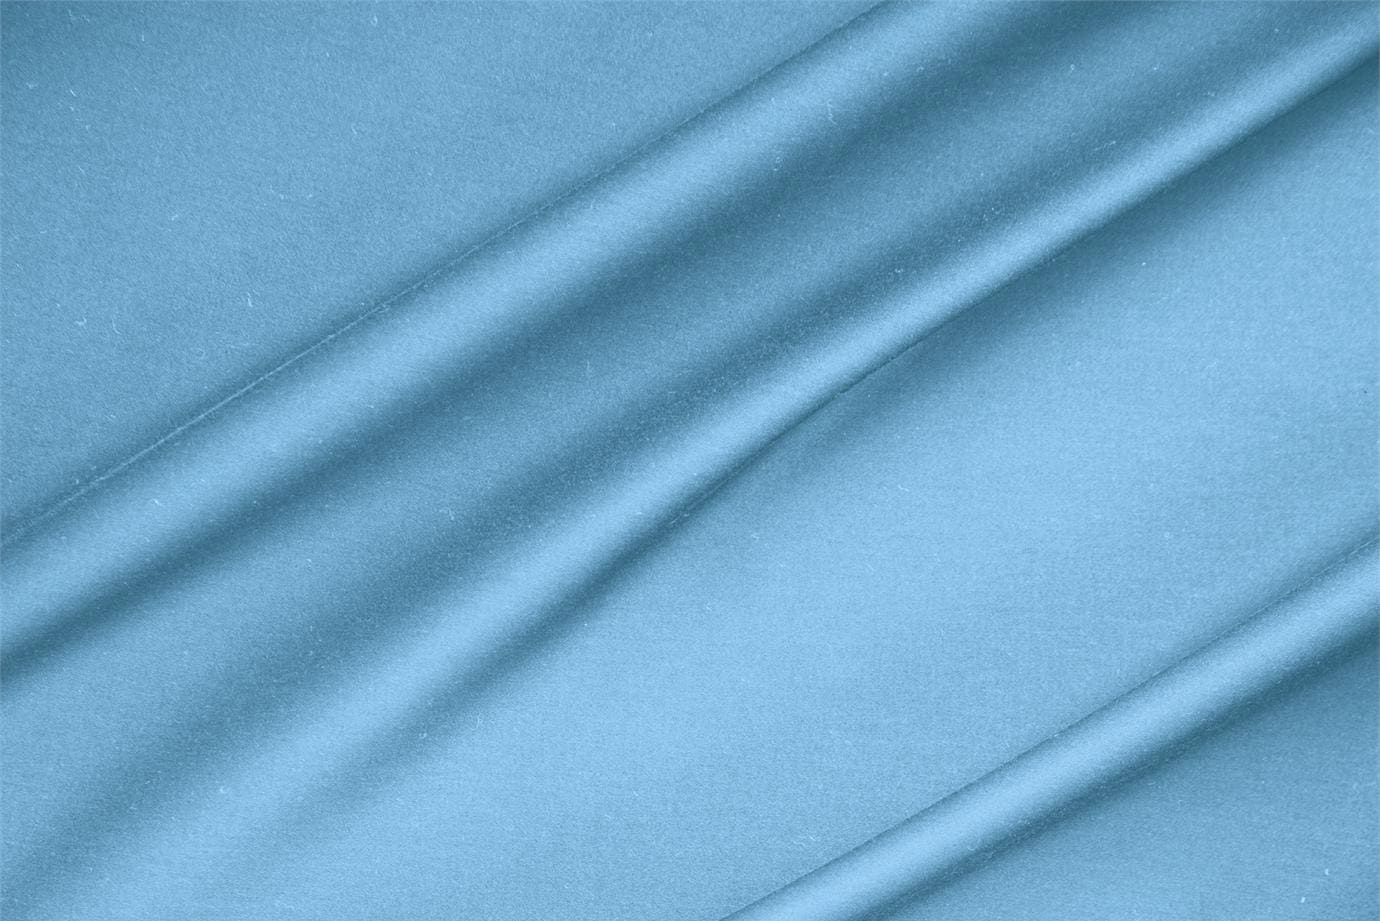 Tessuto Rasatello di Cotone Stretch Blu Turchese in Cotone, Stretch per abbigliamento